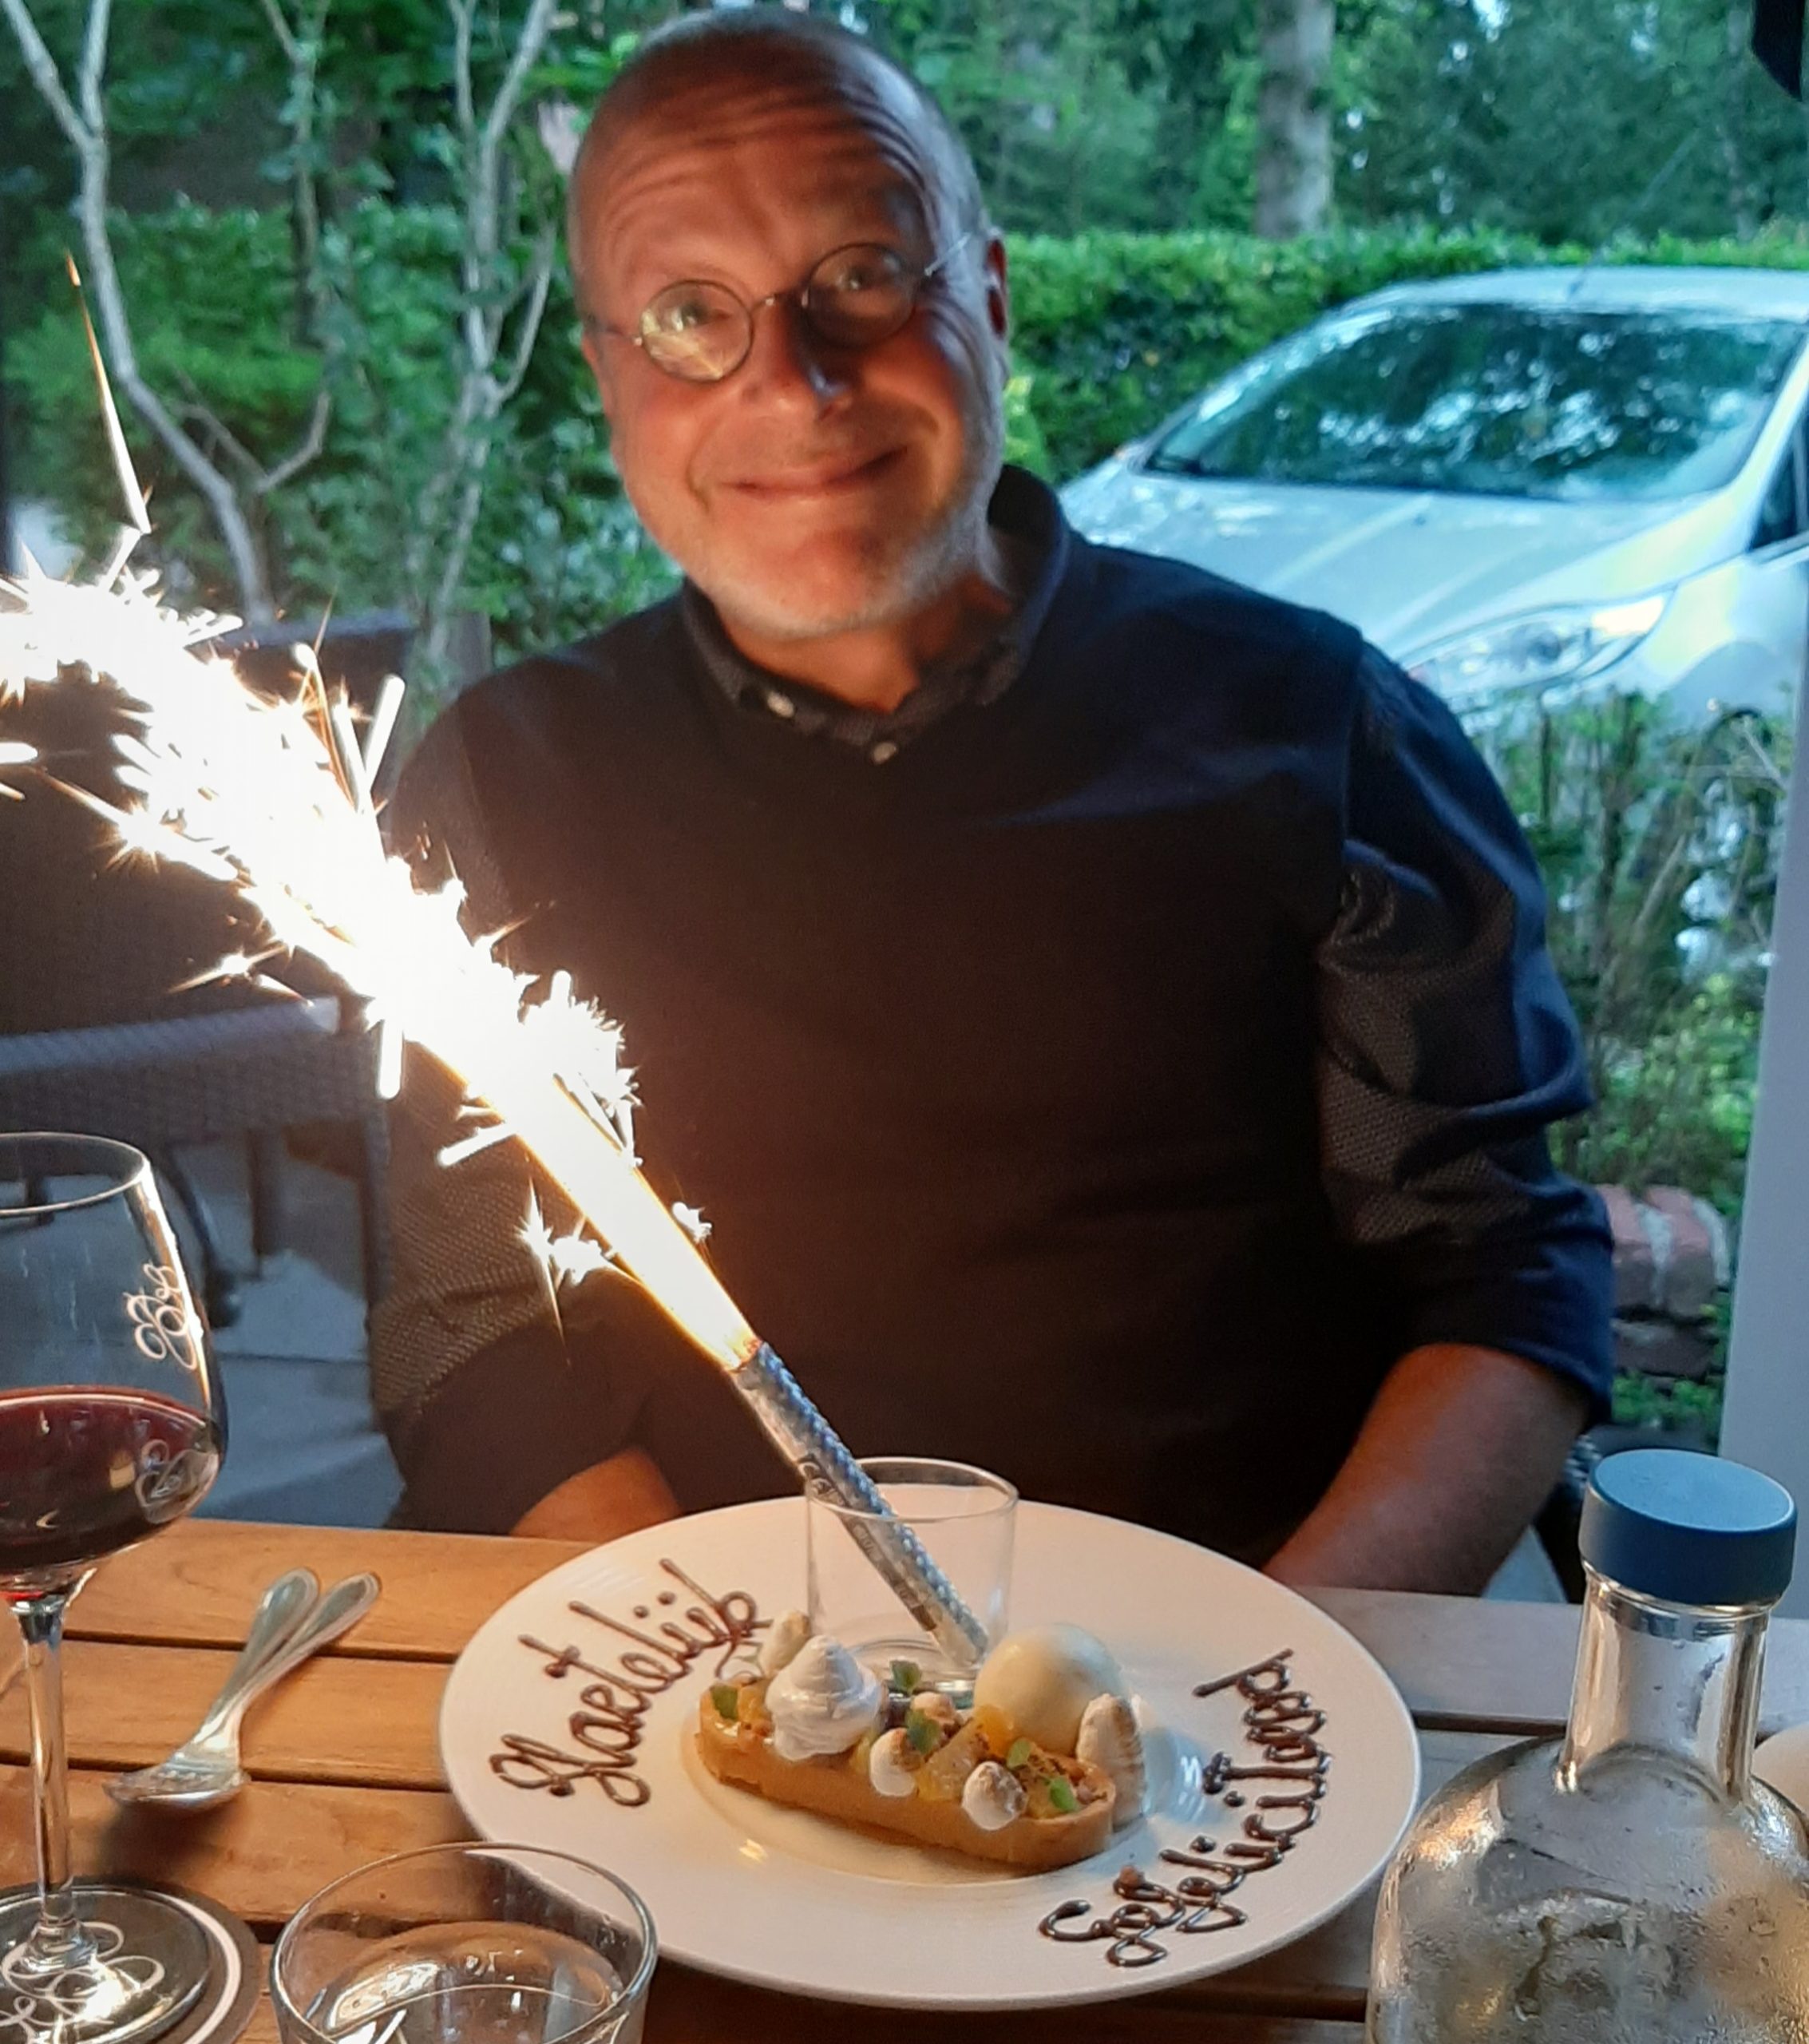 12de dag: Gelukkige verjaardag in Soestduinen